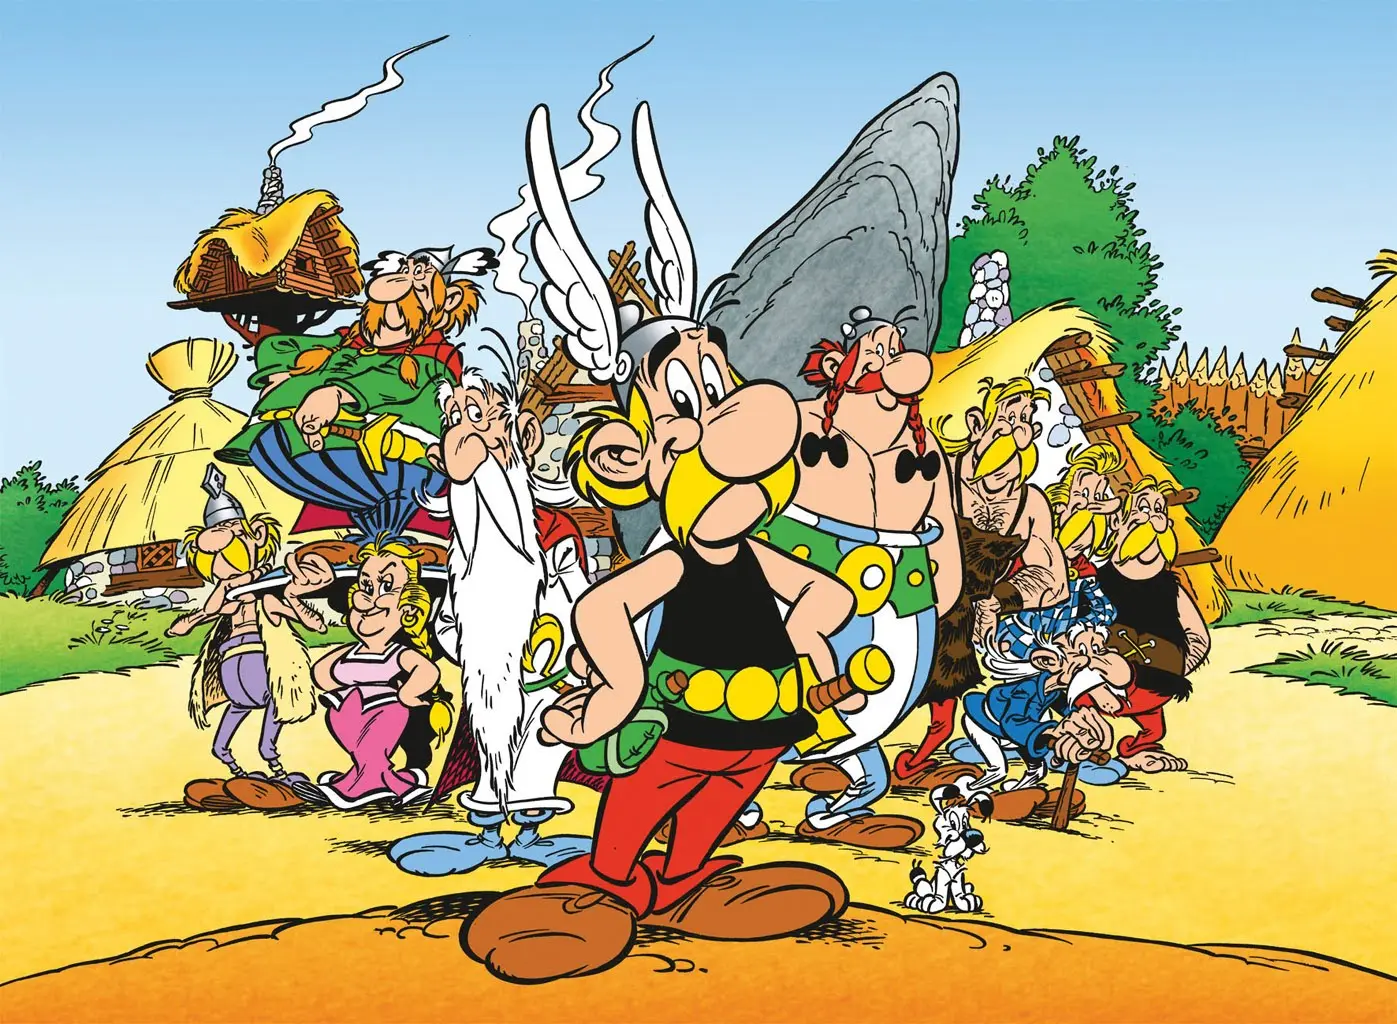 Pár zajímavostí o fenoménu jménem Asterix a Obelix